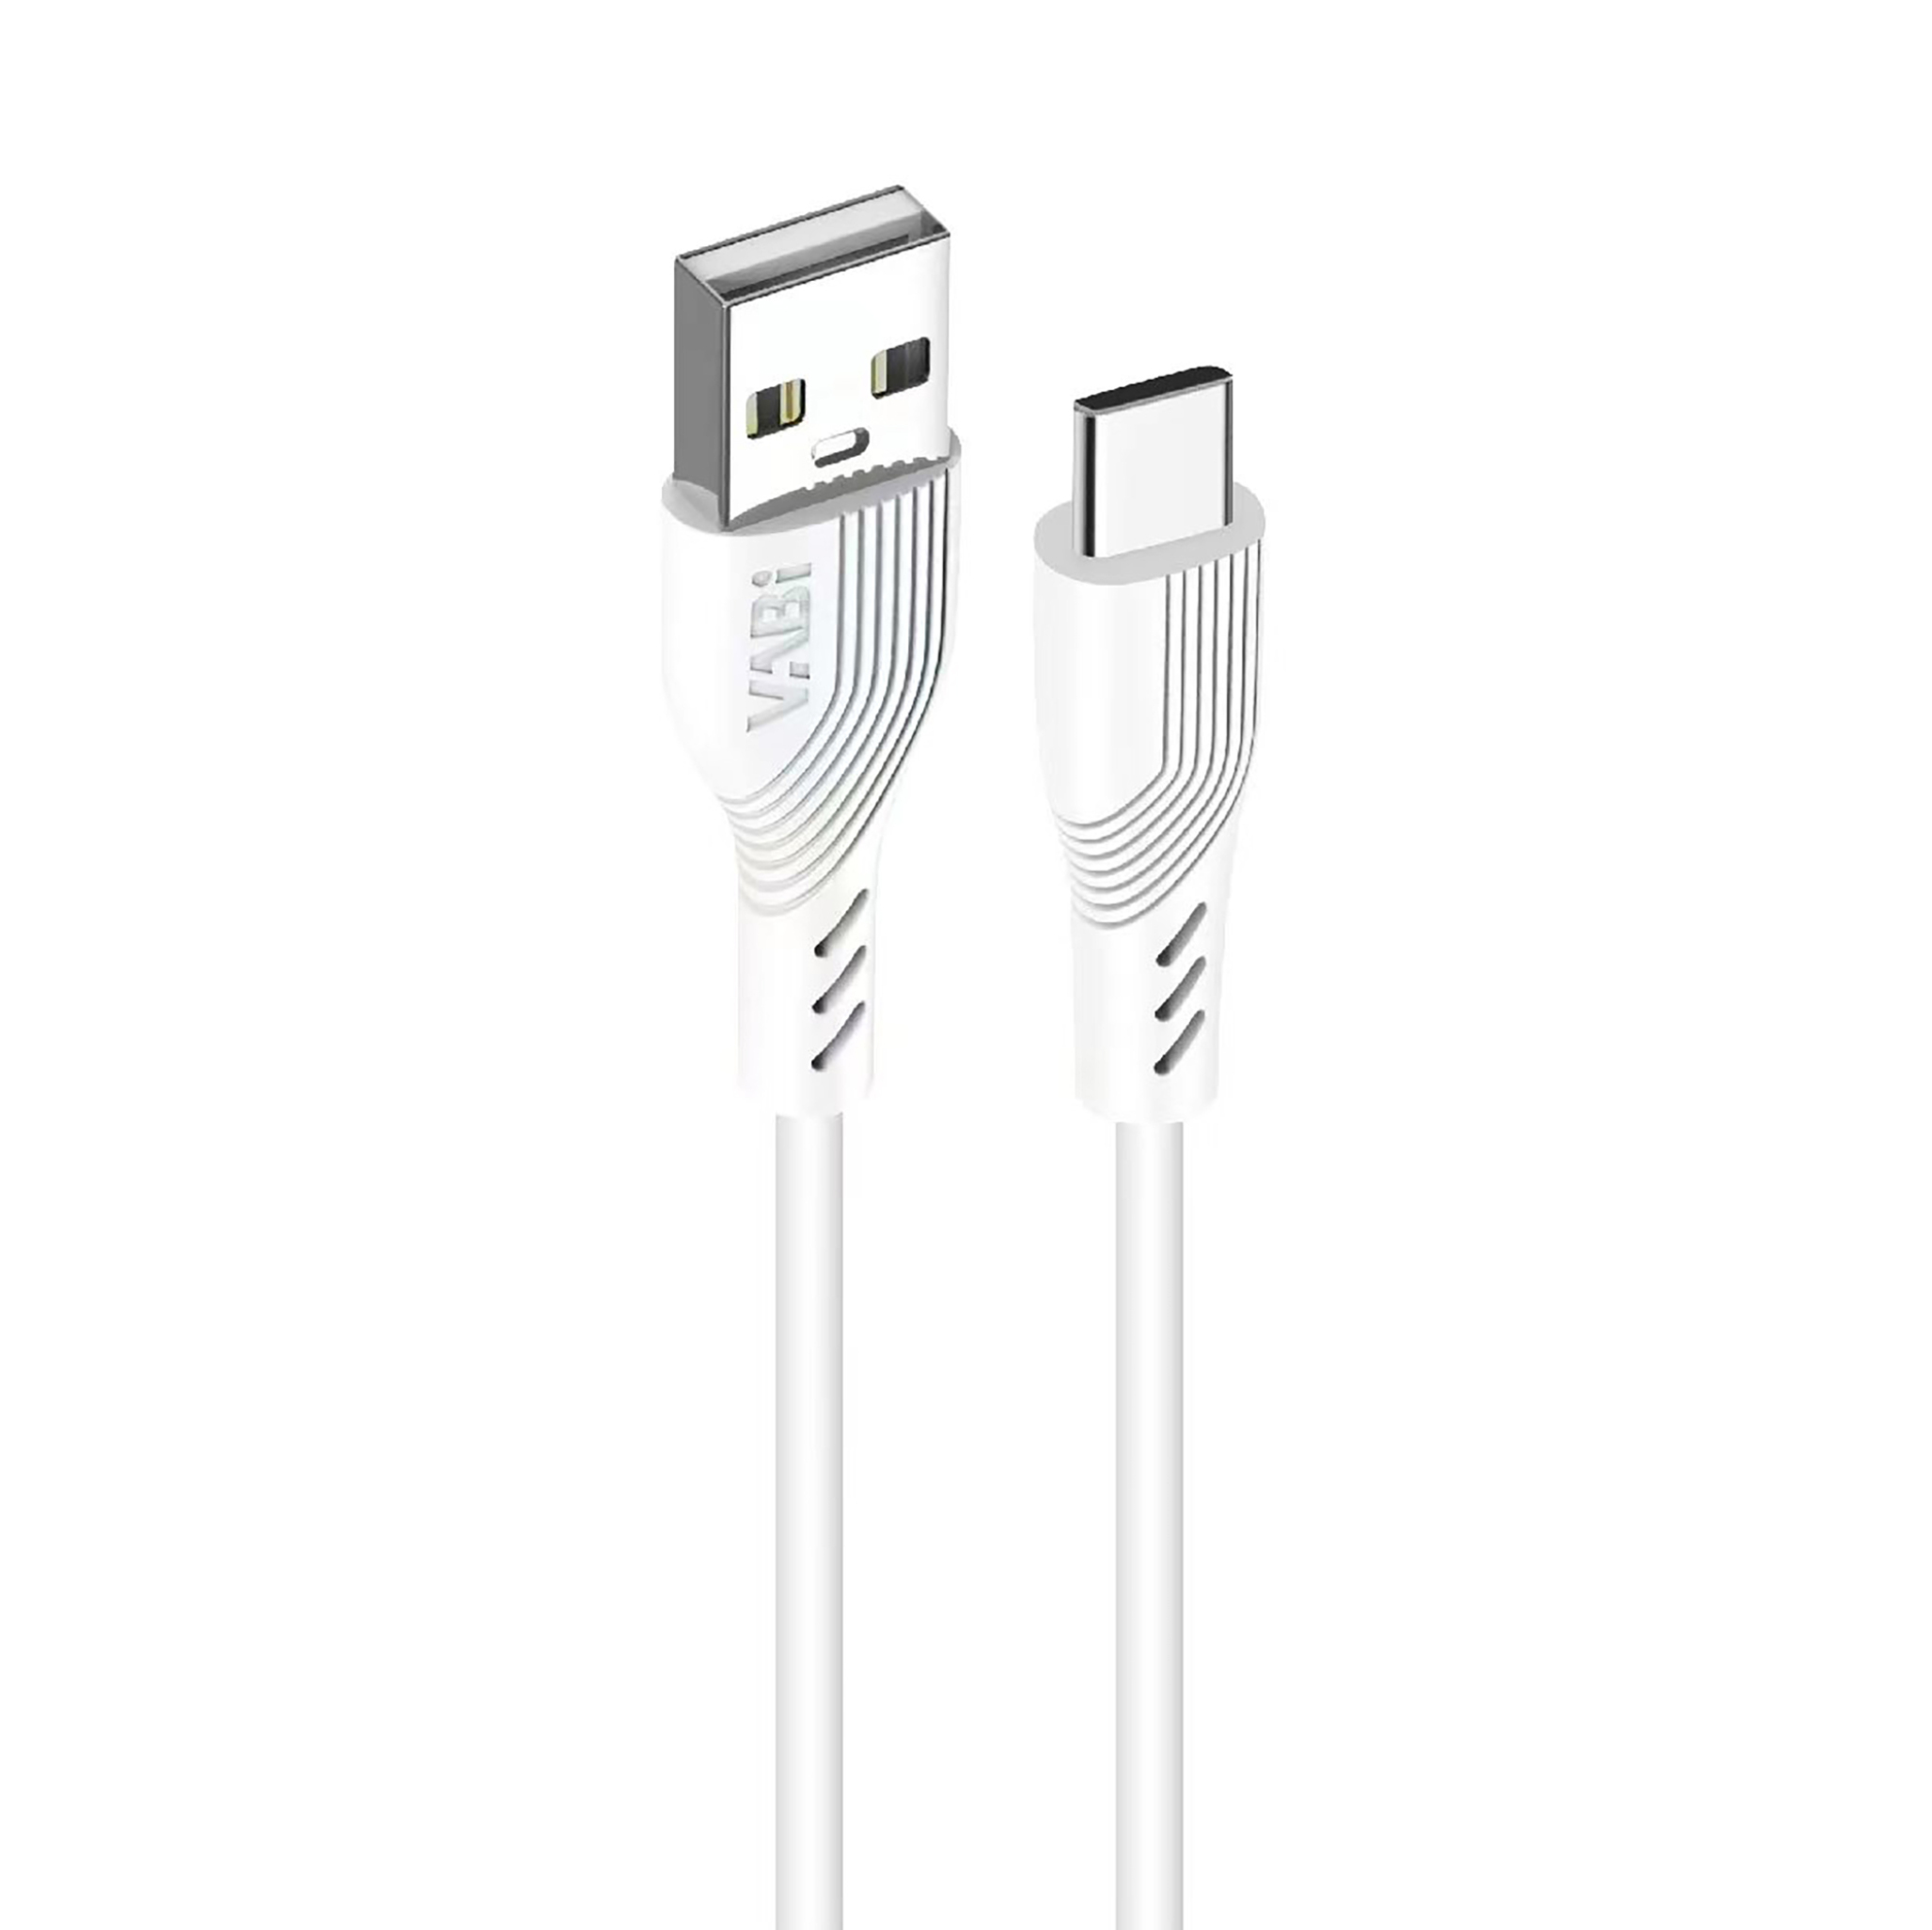  کابل تبدیل USB به Type-C 